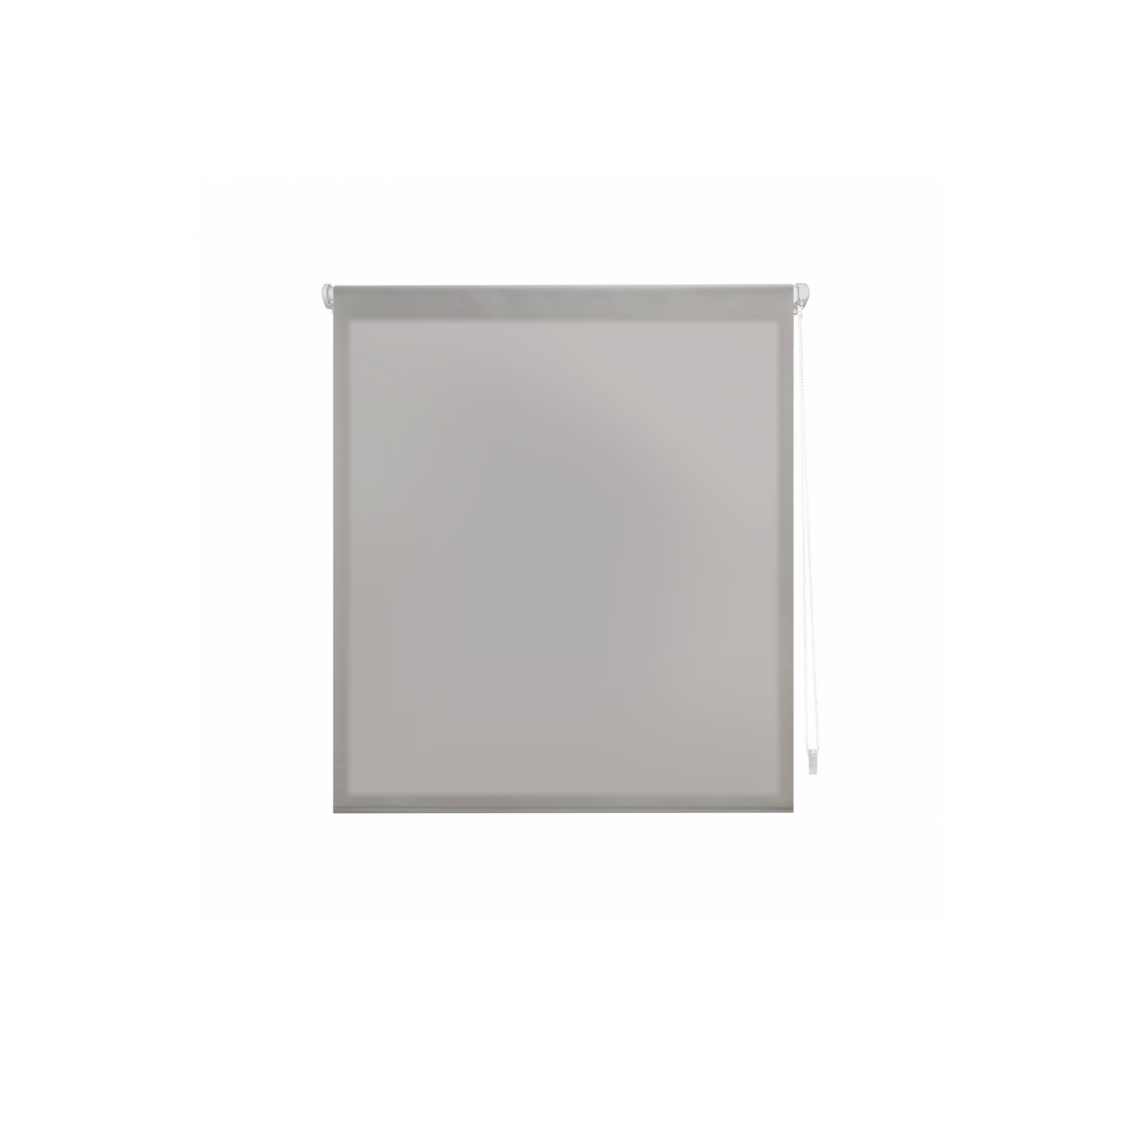 Purline - Store enrouleur 42X180 ARGENT Translucide EASY FIX, Assemblage facile par des pinces de cadre de fenêtre ou un adhésif - Store compatible Velux